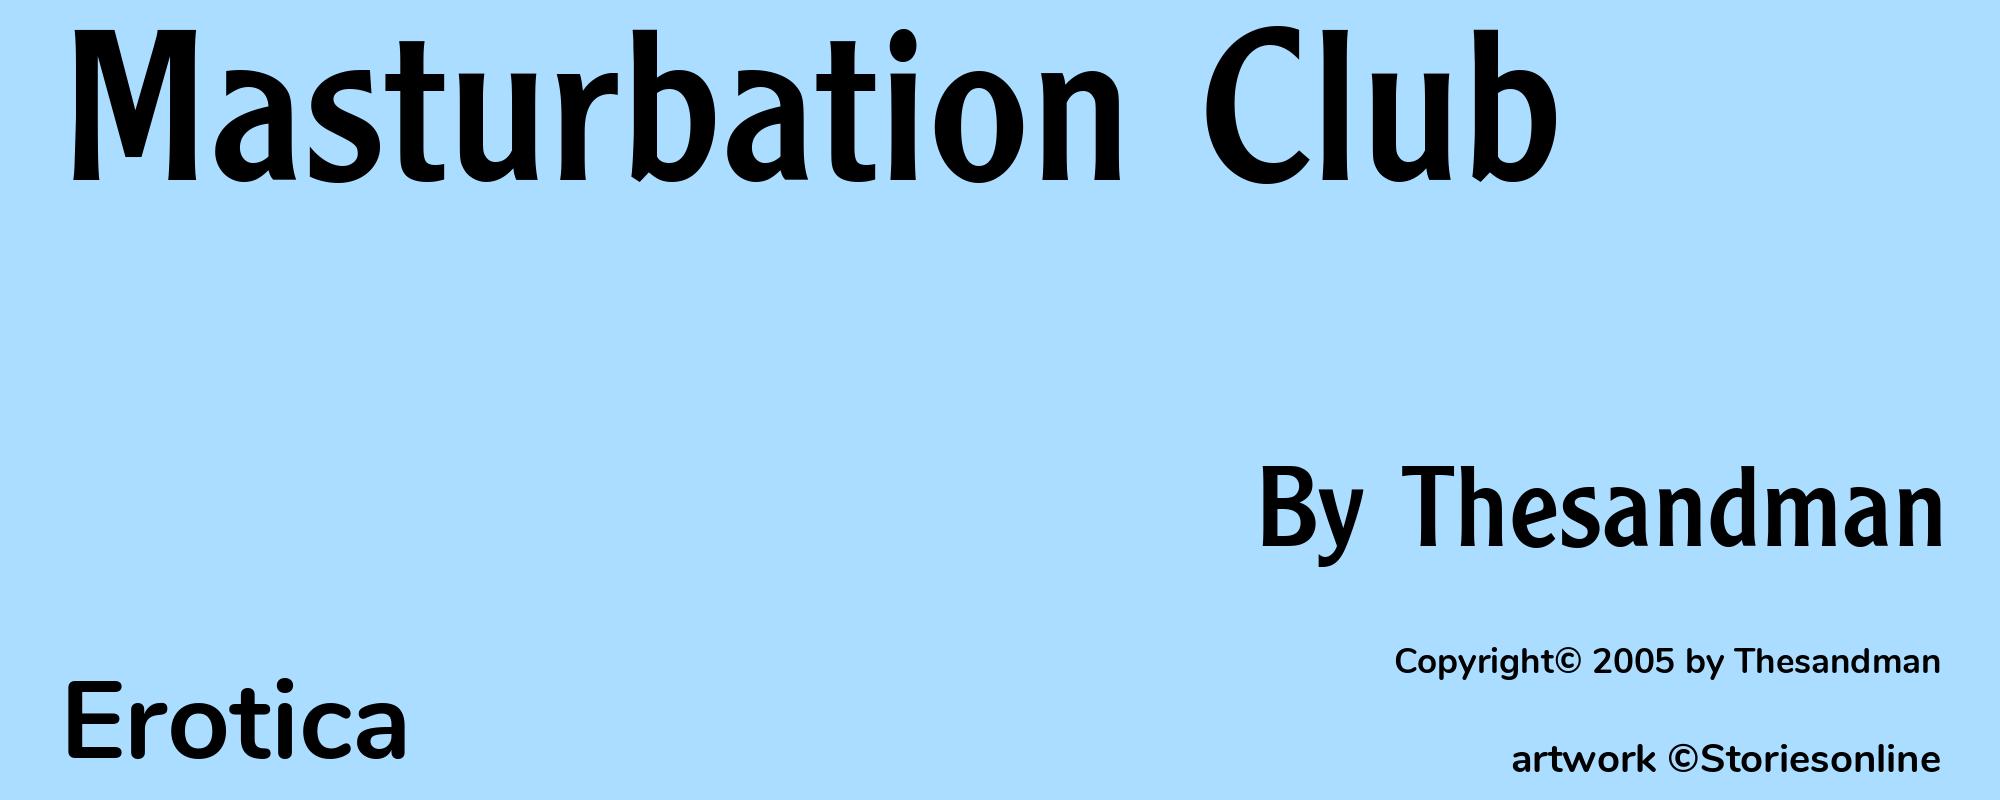 Masturbation Club - Cover